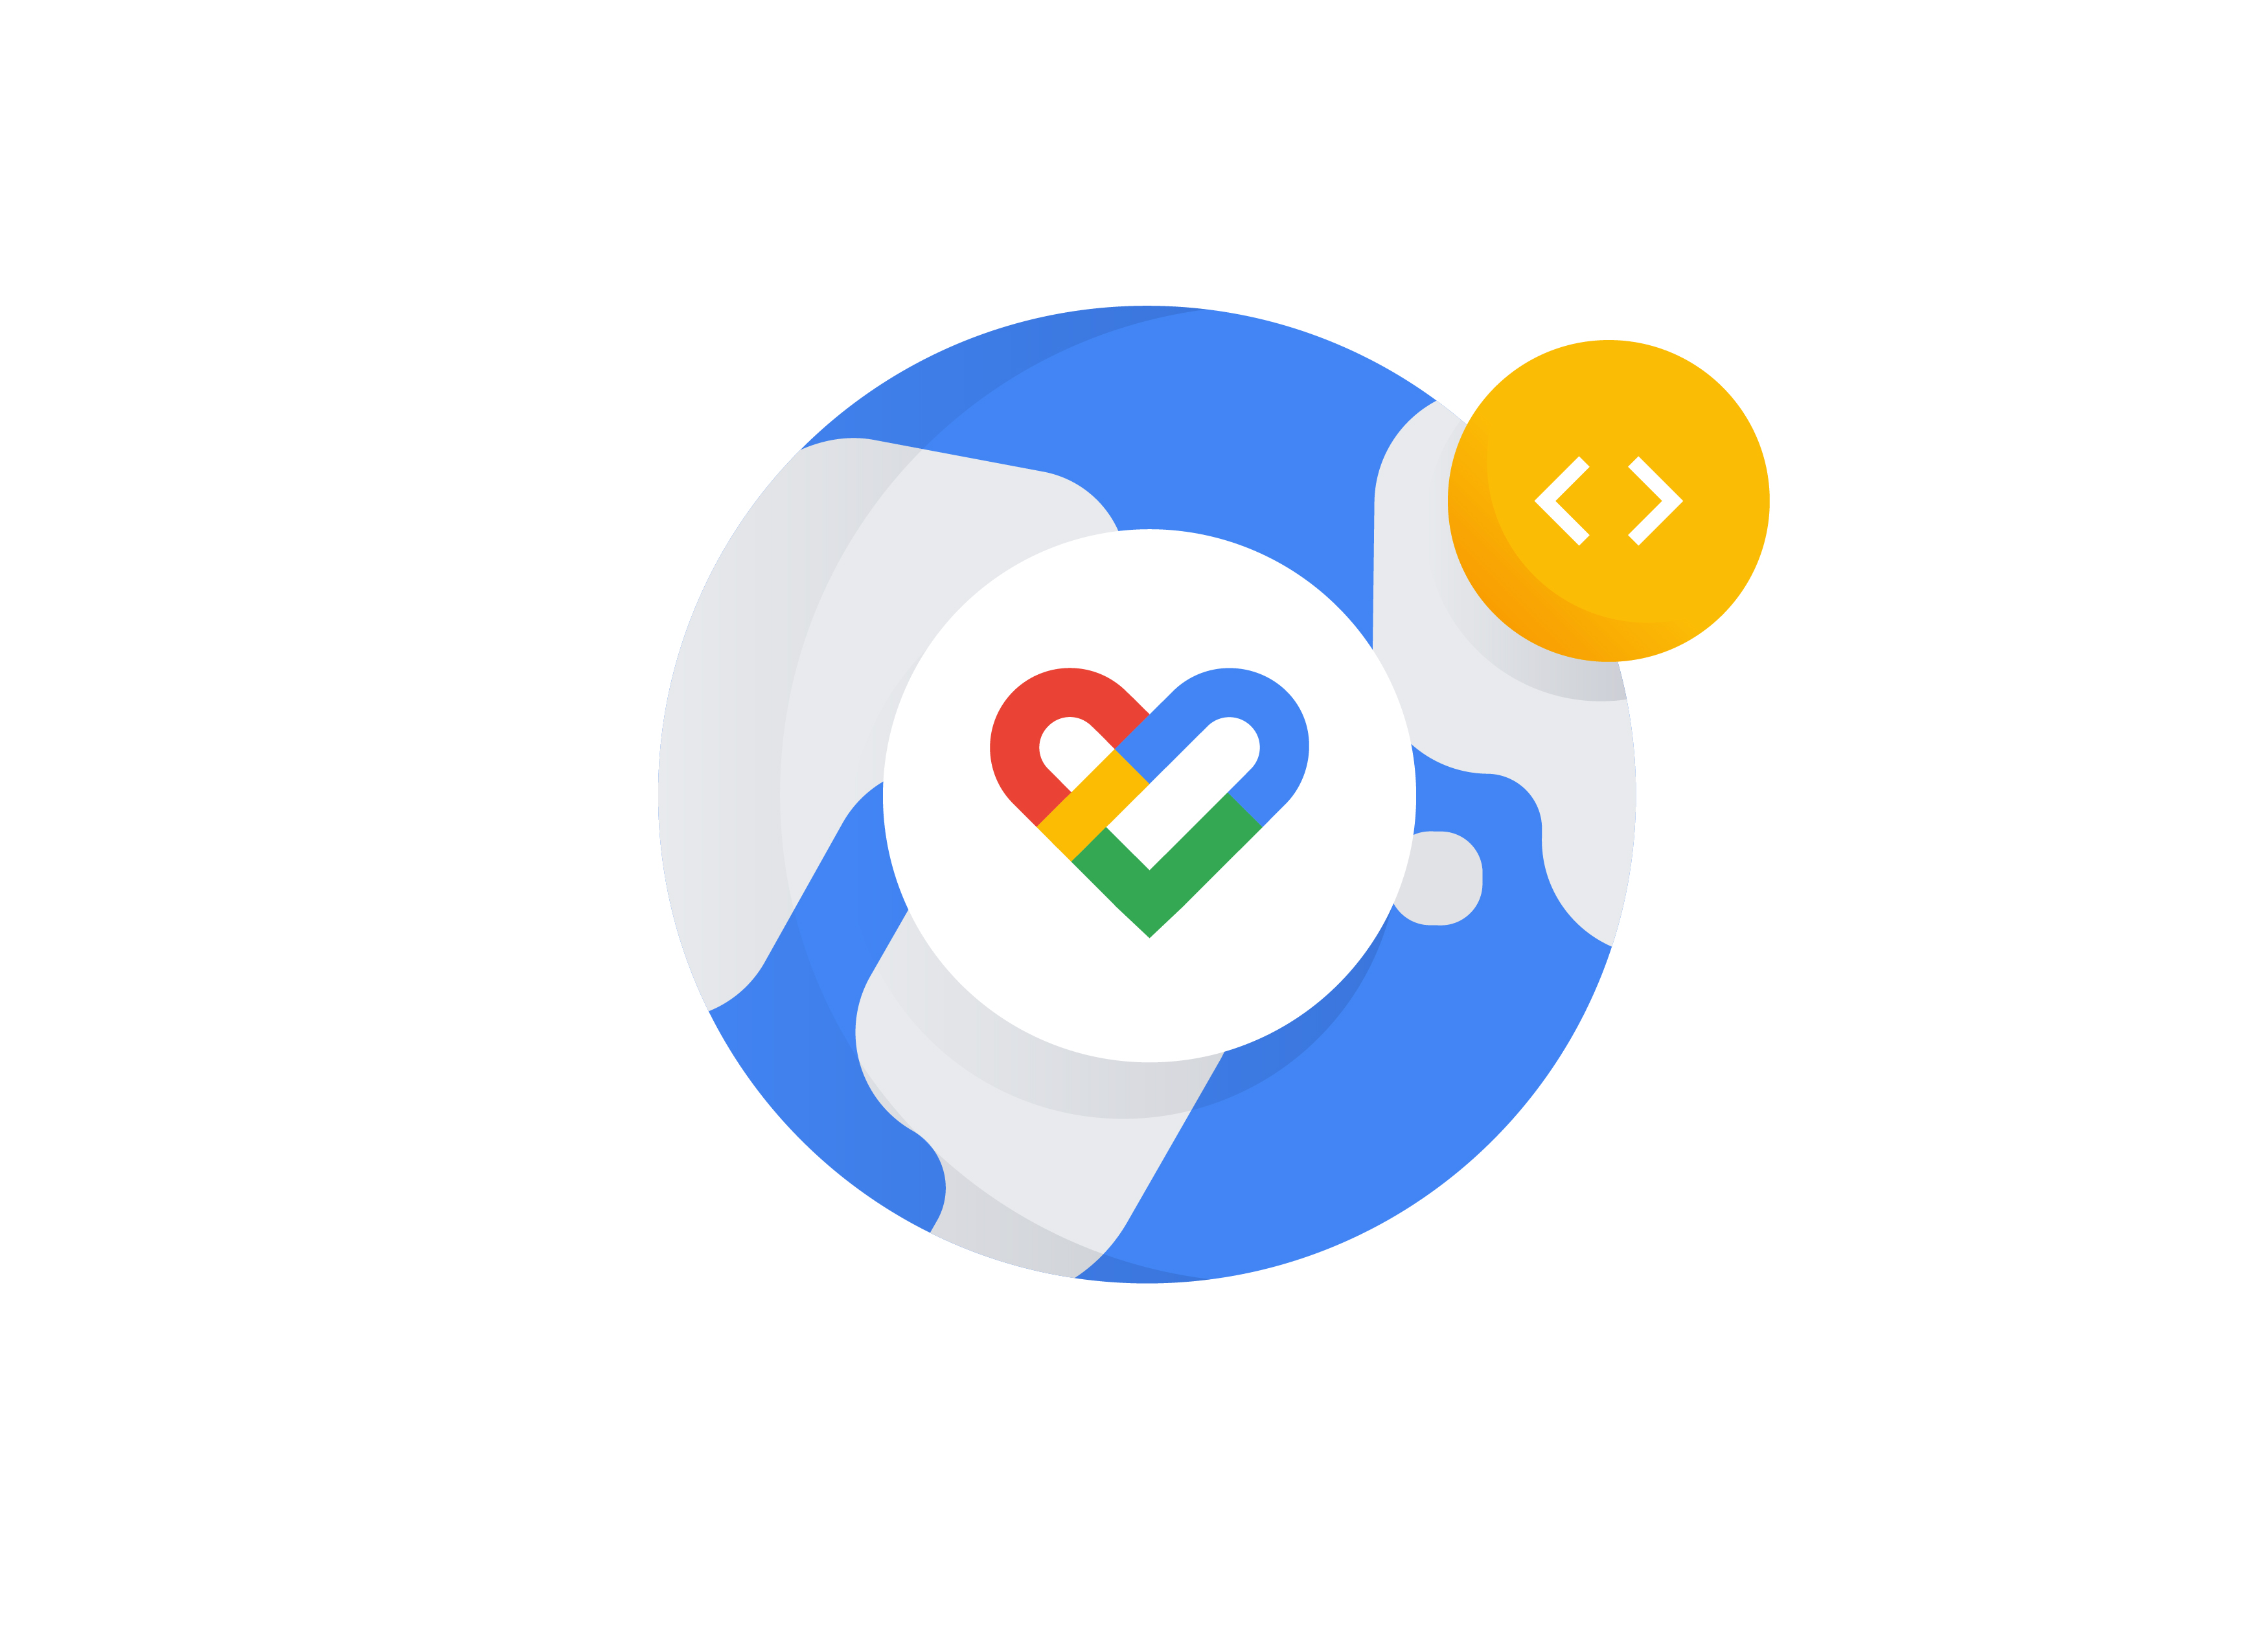 Google Fit | Google Developers